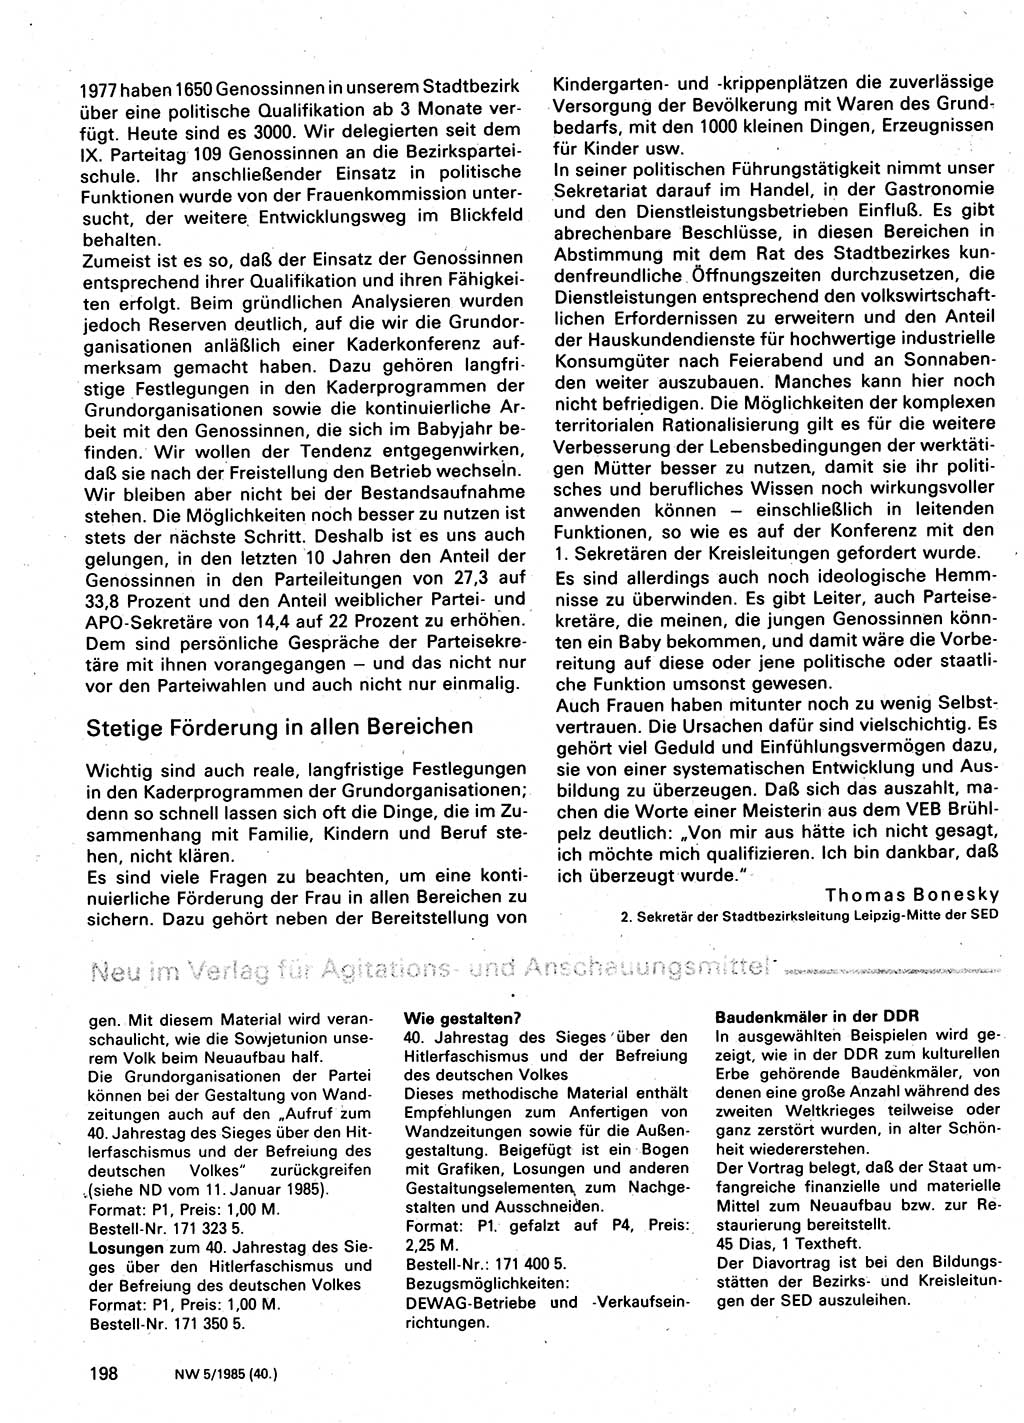 Neuer Weg (NW), Organ des Zentralkomitees (ZK) der SED (Sozialistische Einheitspartei Deutschlands) für Fragen des Parteilebens, 40. Jahrgang [Deutsche Demokratische Republik (DDR)] 1985, Seite 198 (NW ZK SED DDR 1985, S. 198)